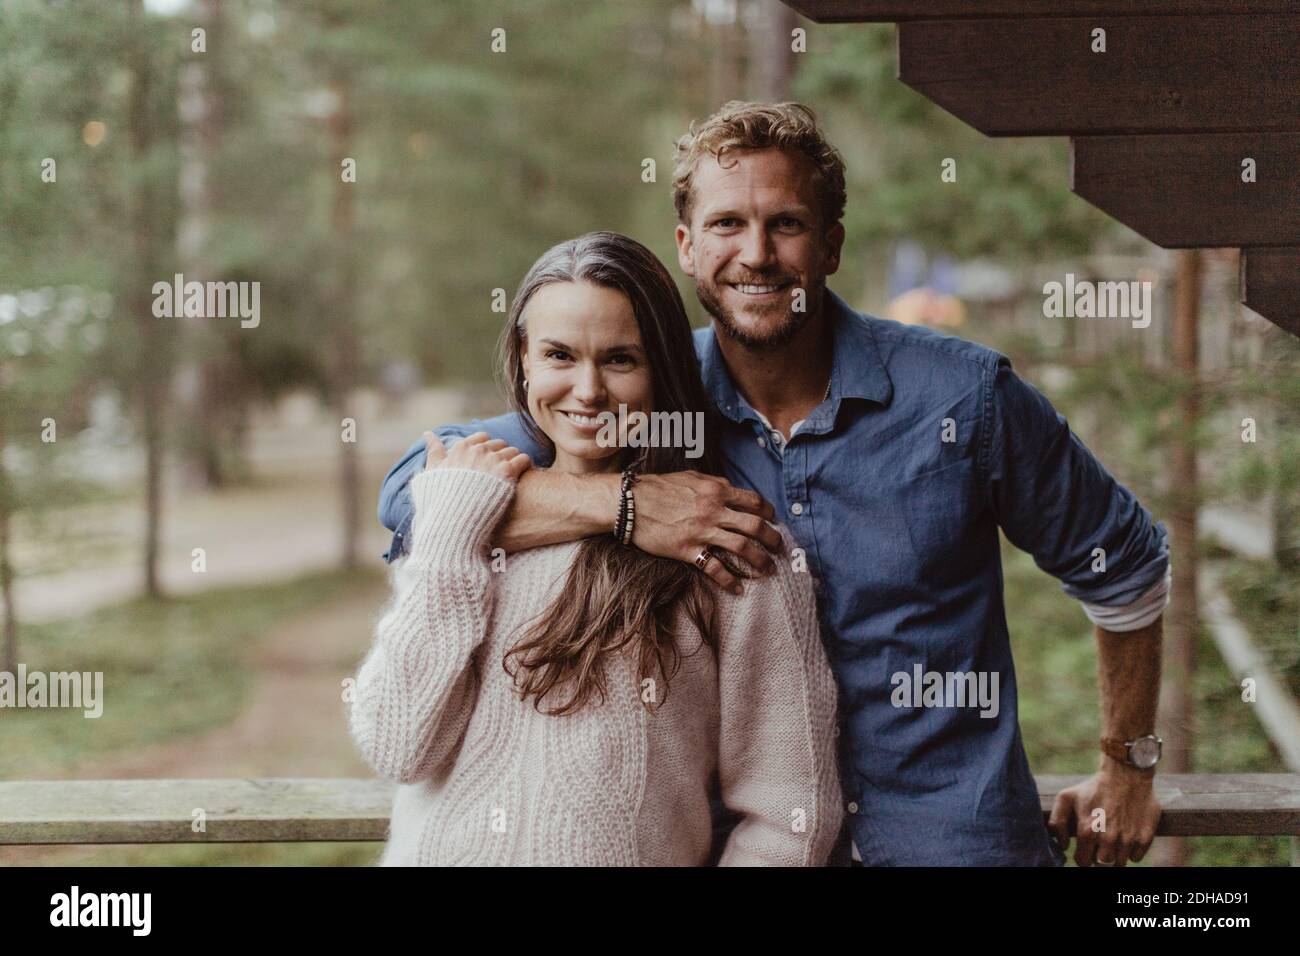 Portrait d'un couple souriant avec le bras autour de la main courante Banque D'Images